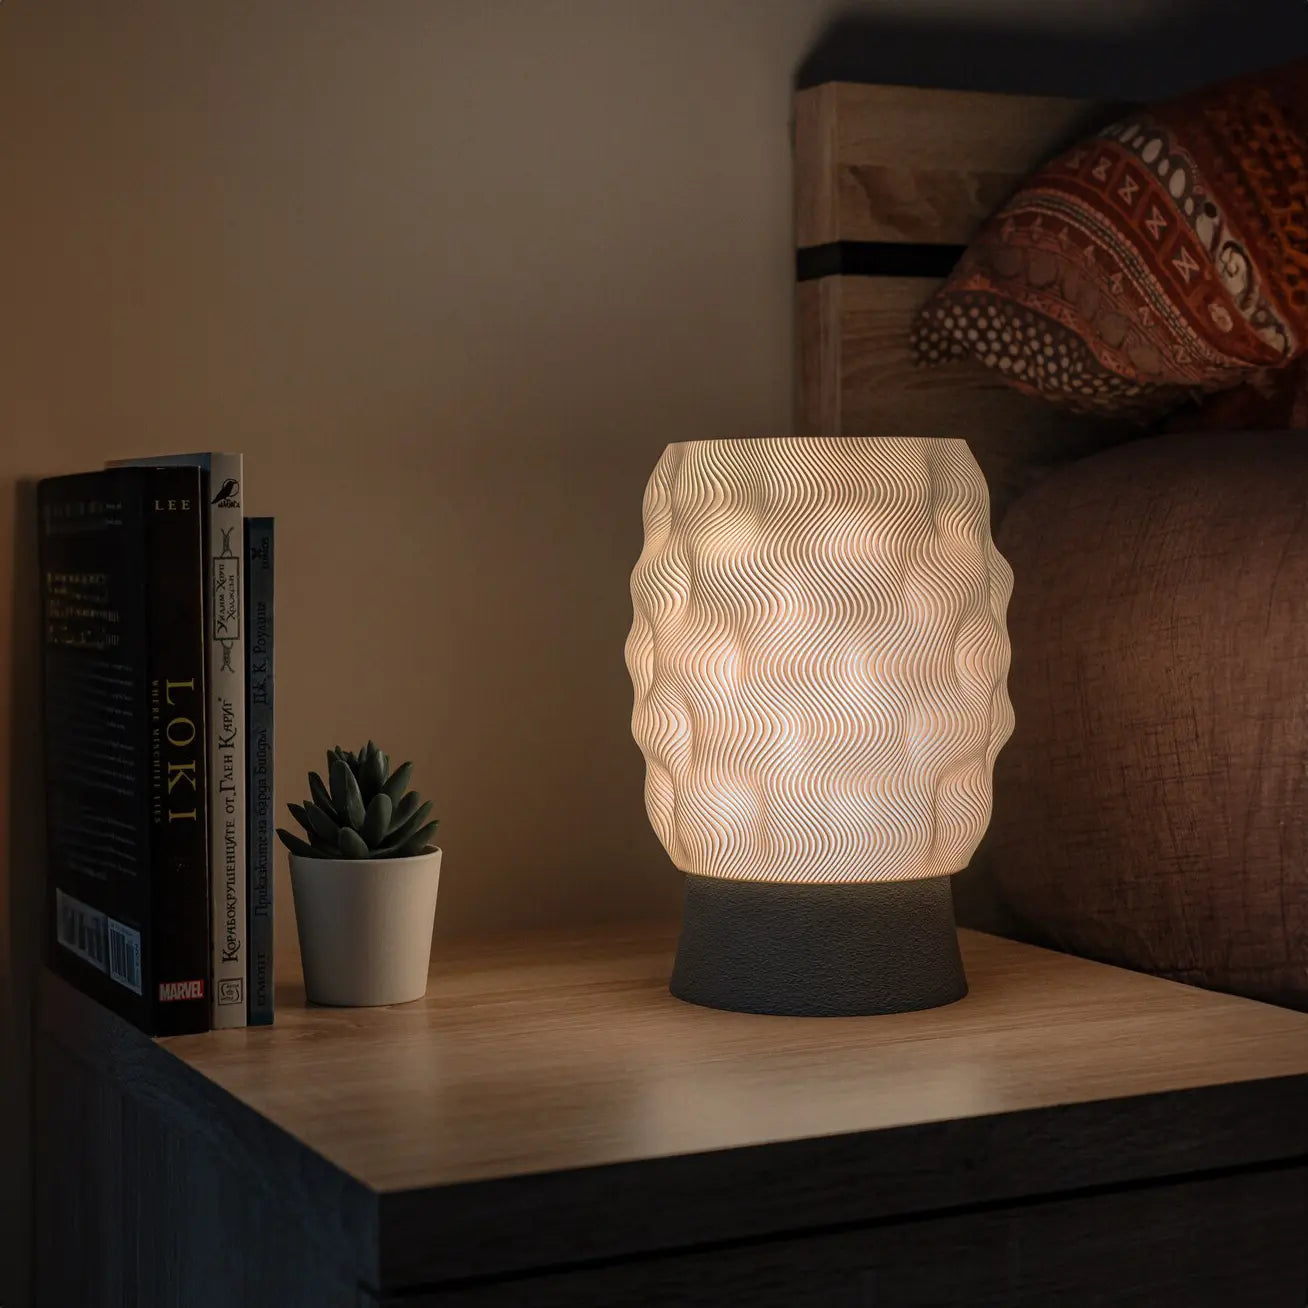 Natural Table Lamp - Desk/Night/Bedside Modern Lamp